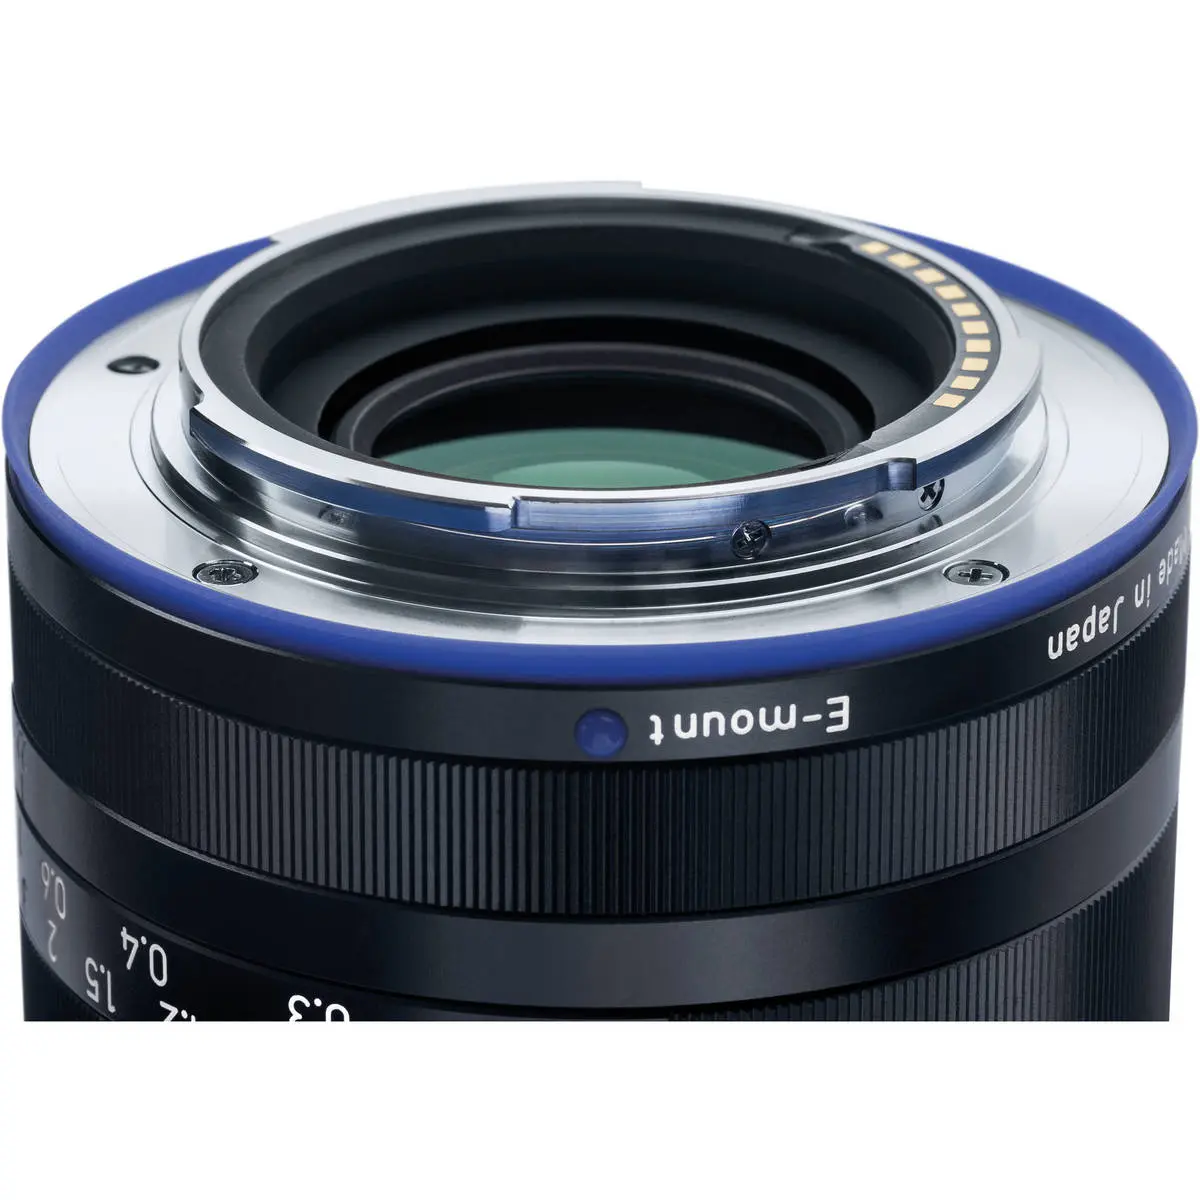 16. Carl Zeiss Loxia 2.4/25 (Sony FE) Lens